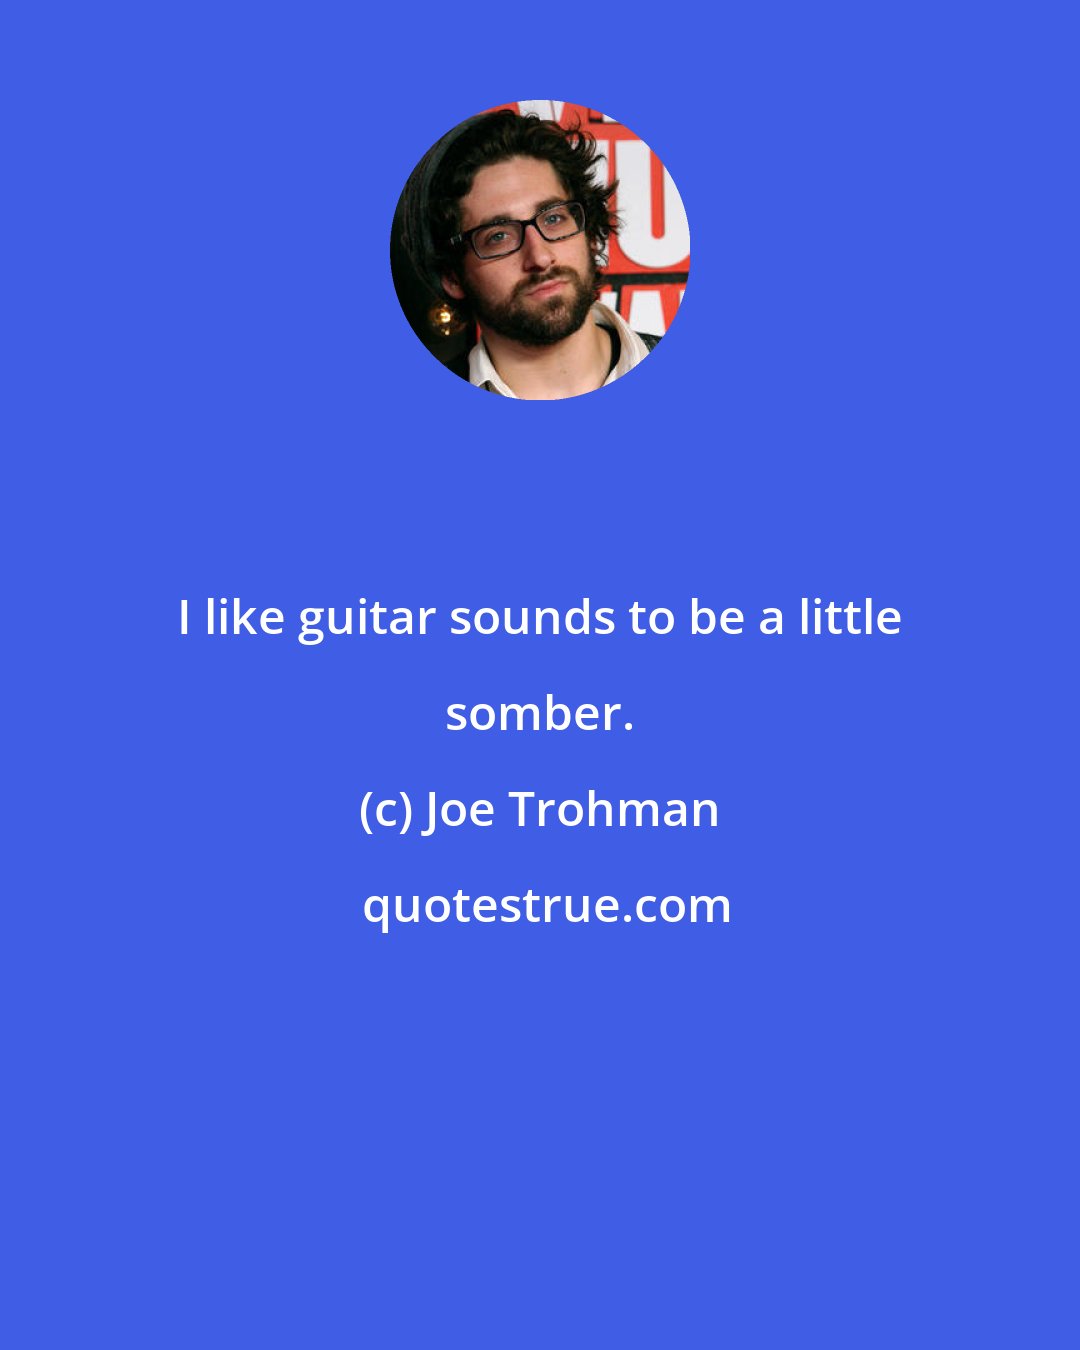 Joe Trohman: I like guitar sounds to be a little somber.